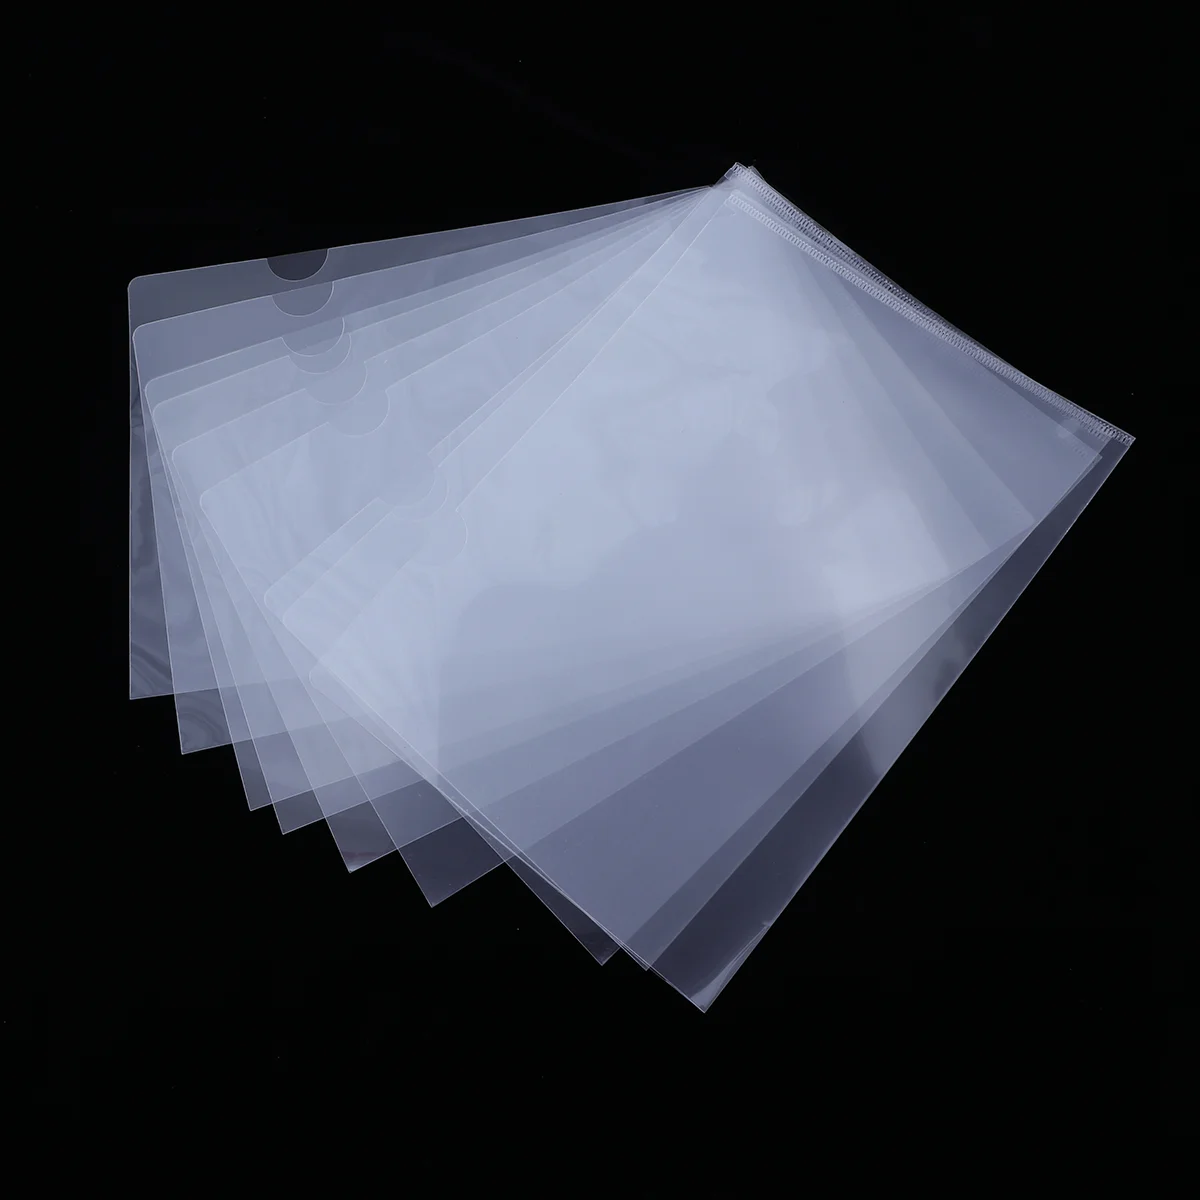 

Folder File Clear Plastic Document Folders Paper Envelopes Organizer Transparent A4 Storage Poly Pockets Envelope Pocket Sleeves